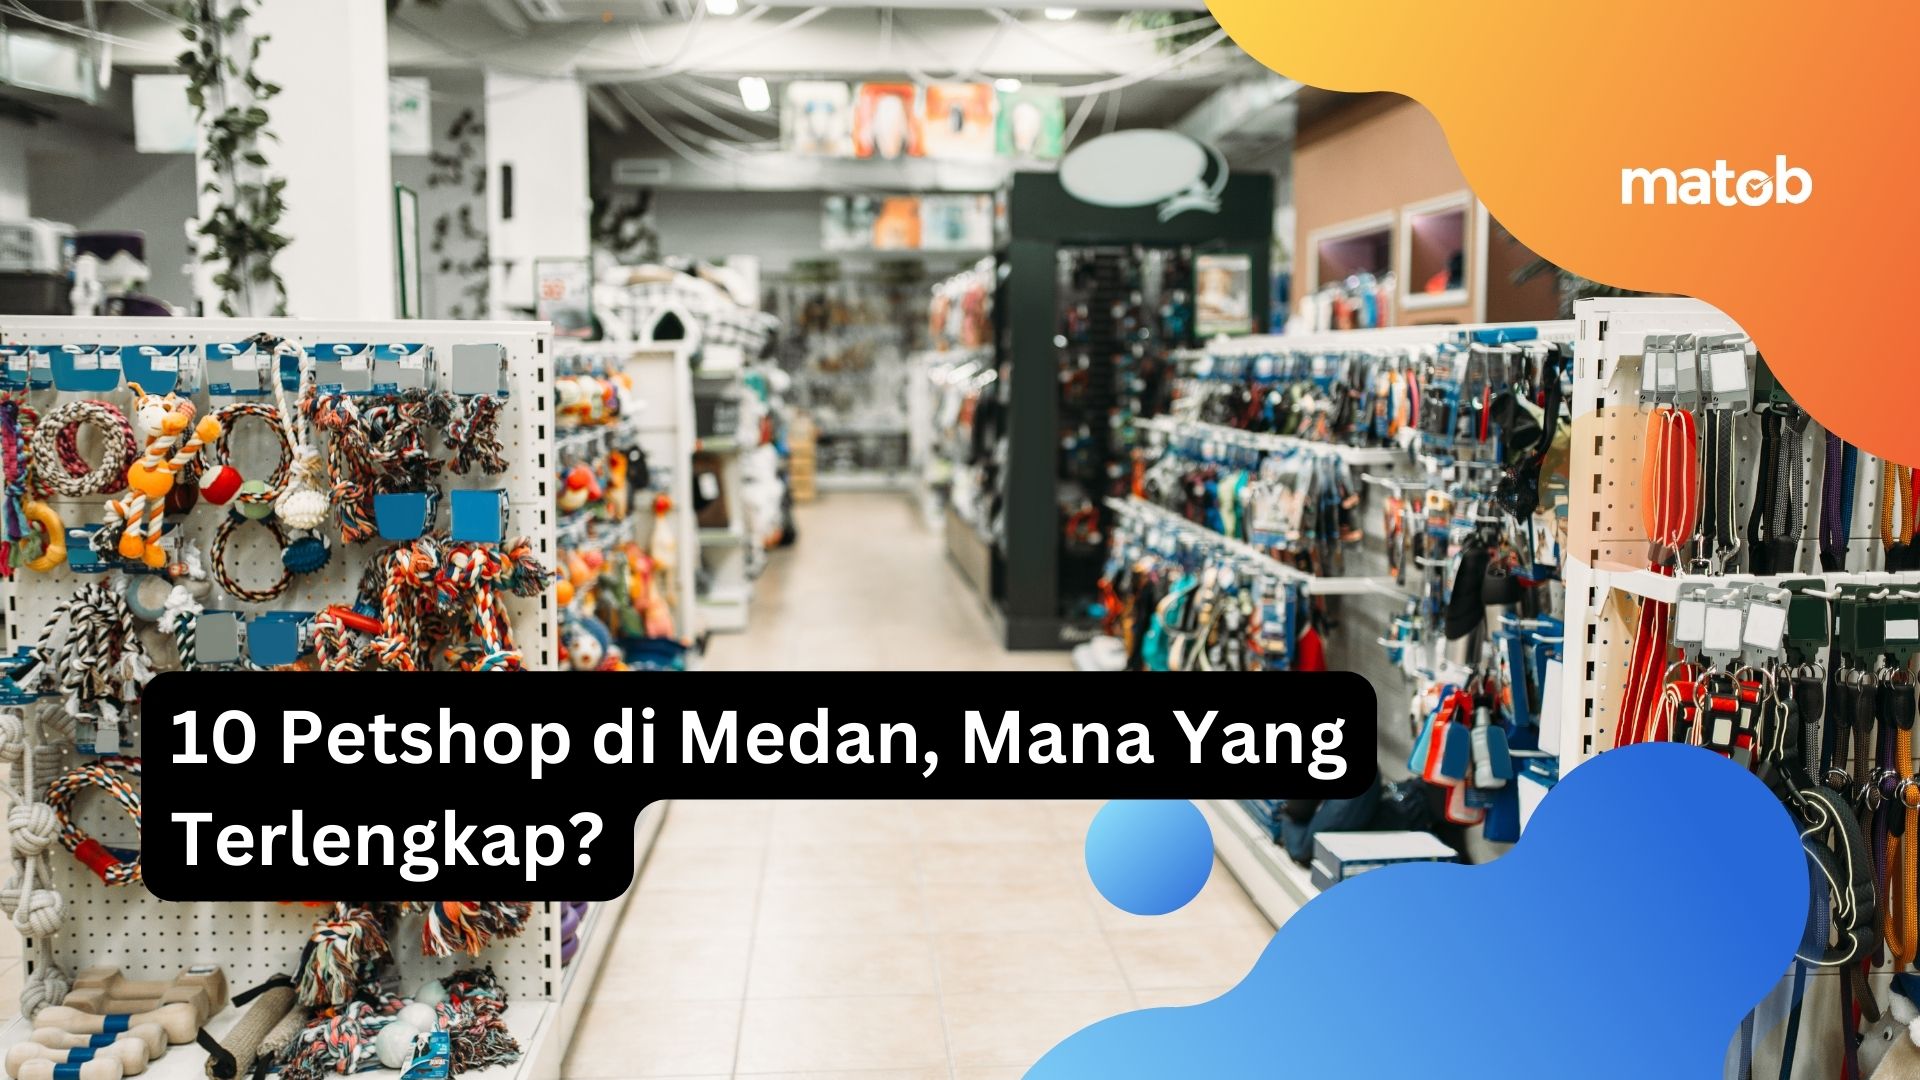 10 Petshop di Medan, Mana Yang Terlengkap?